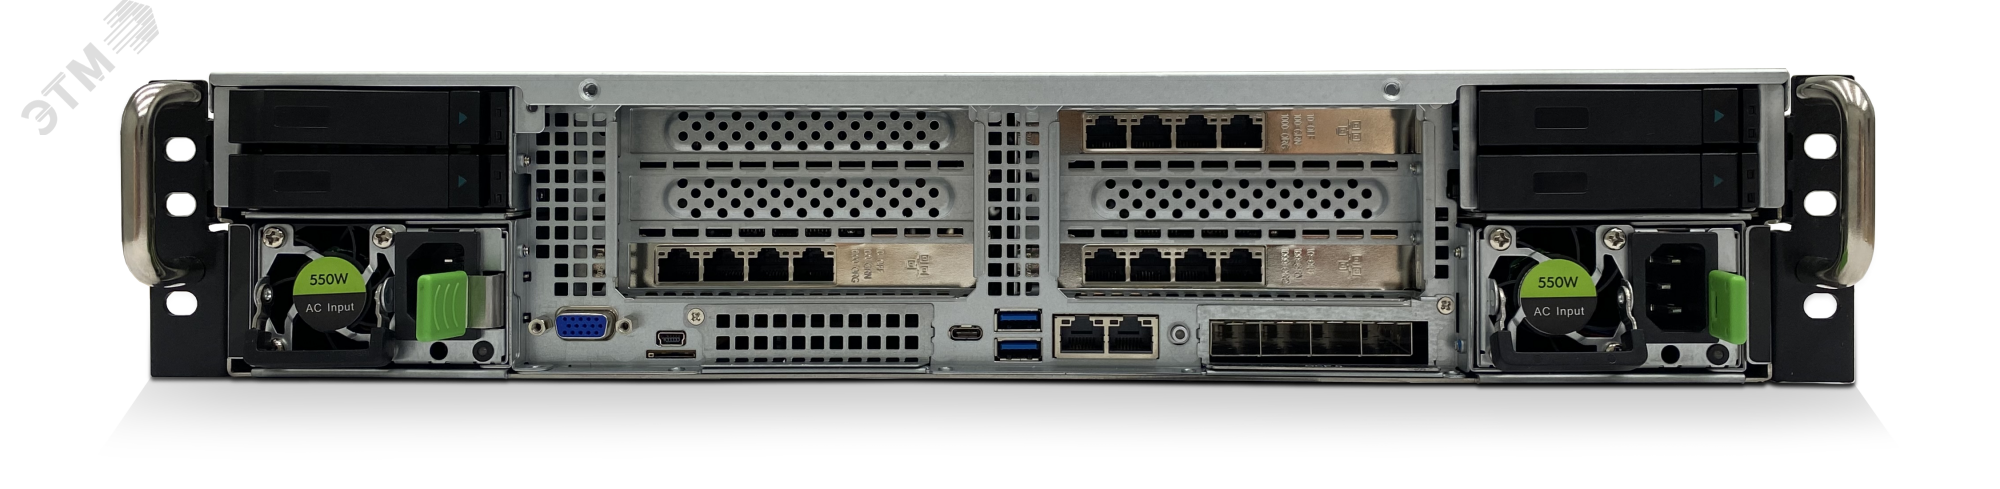 Сервер специализированный D204CF 2U, Xeon Scalable v2, до 6 накопителей, ОЗУ до 6 ТБ DDR4 T50 D204CF Aquarius - превью 4